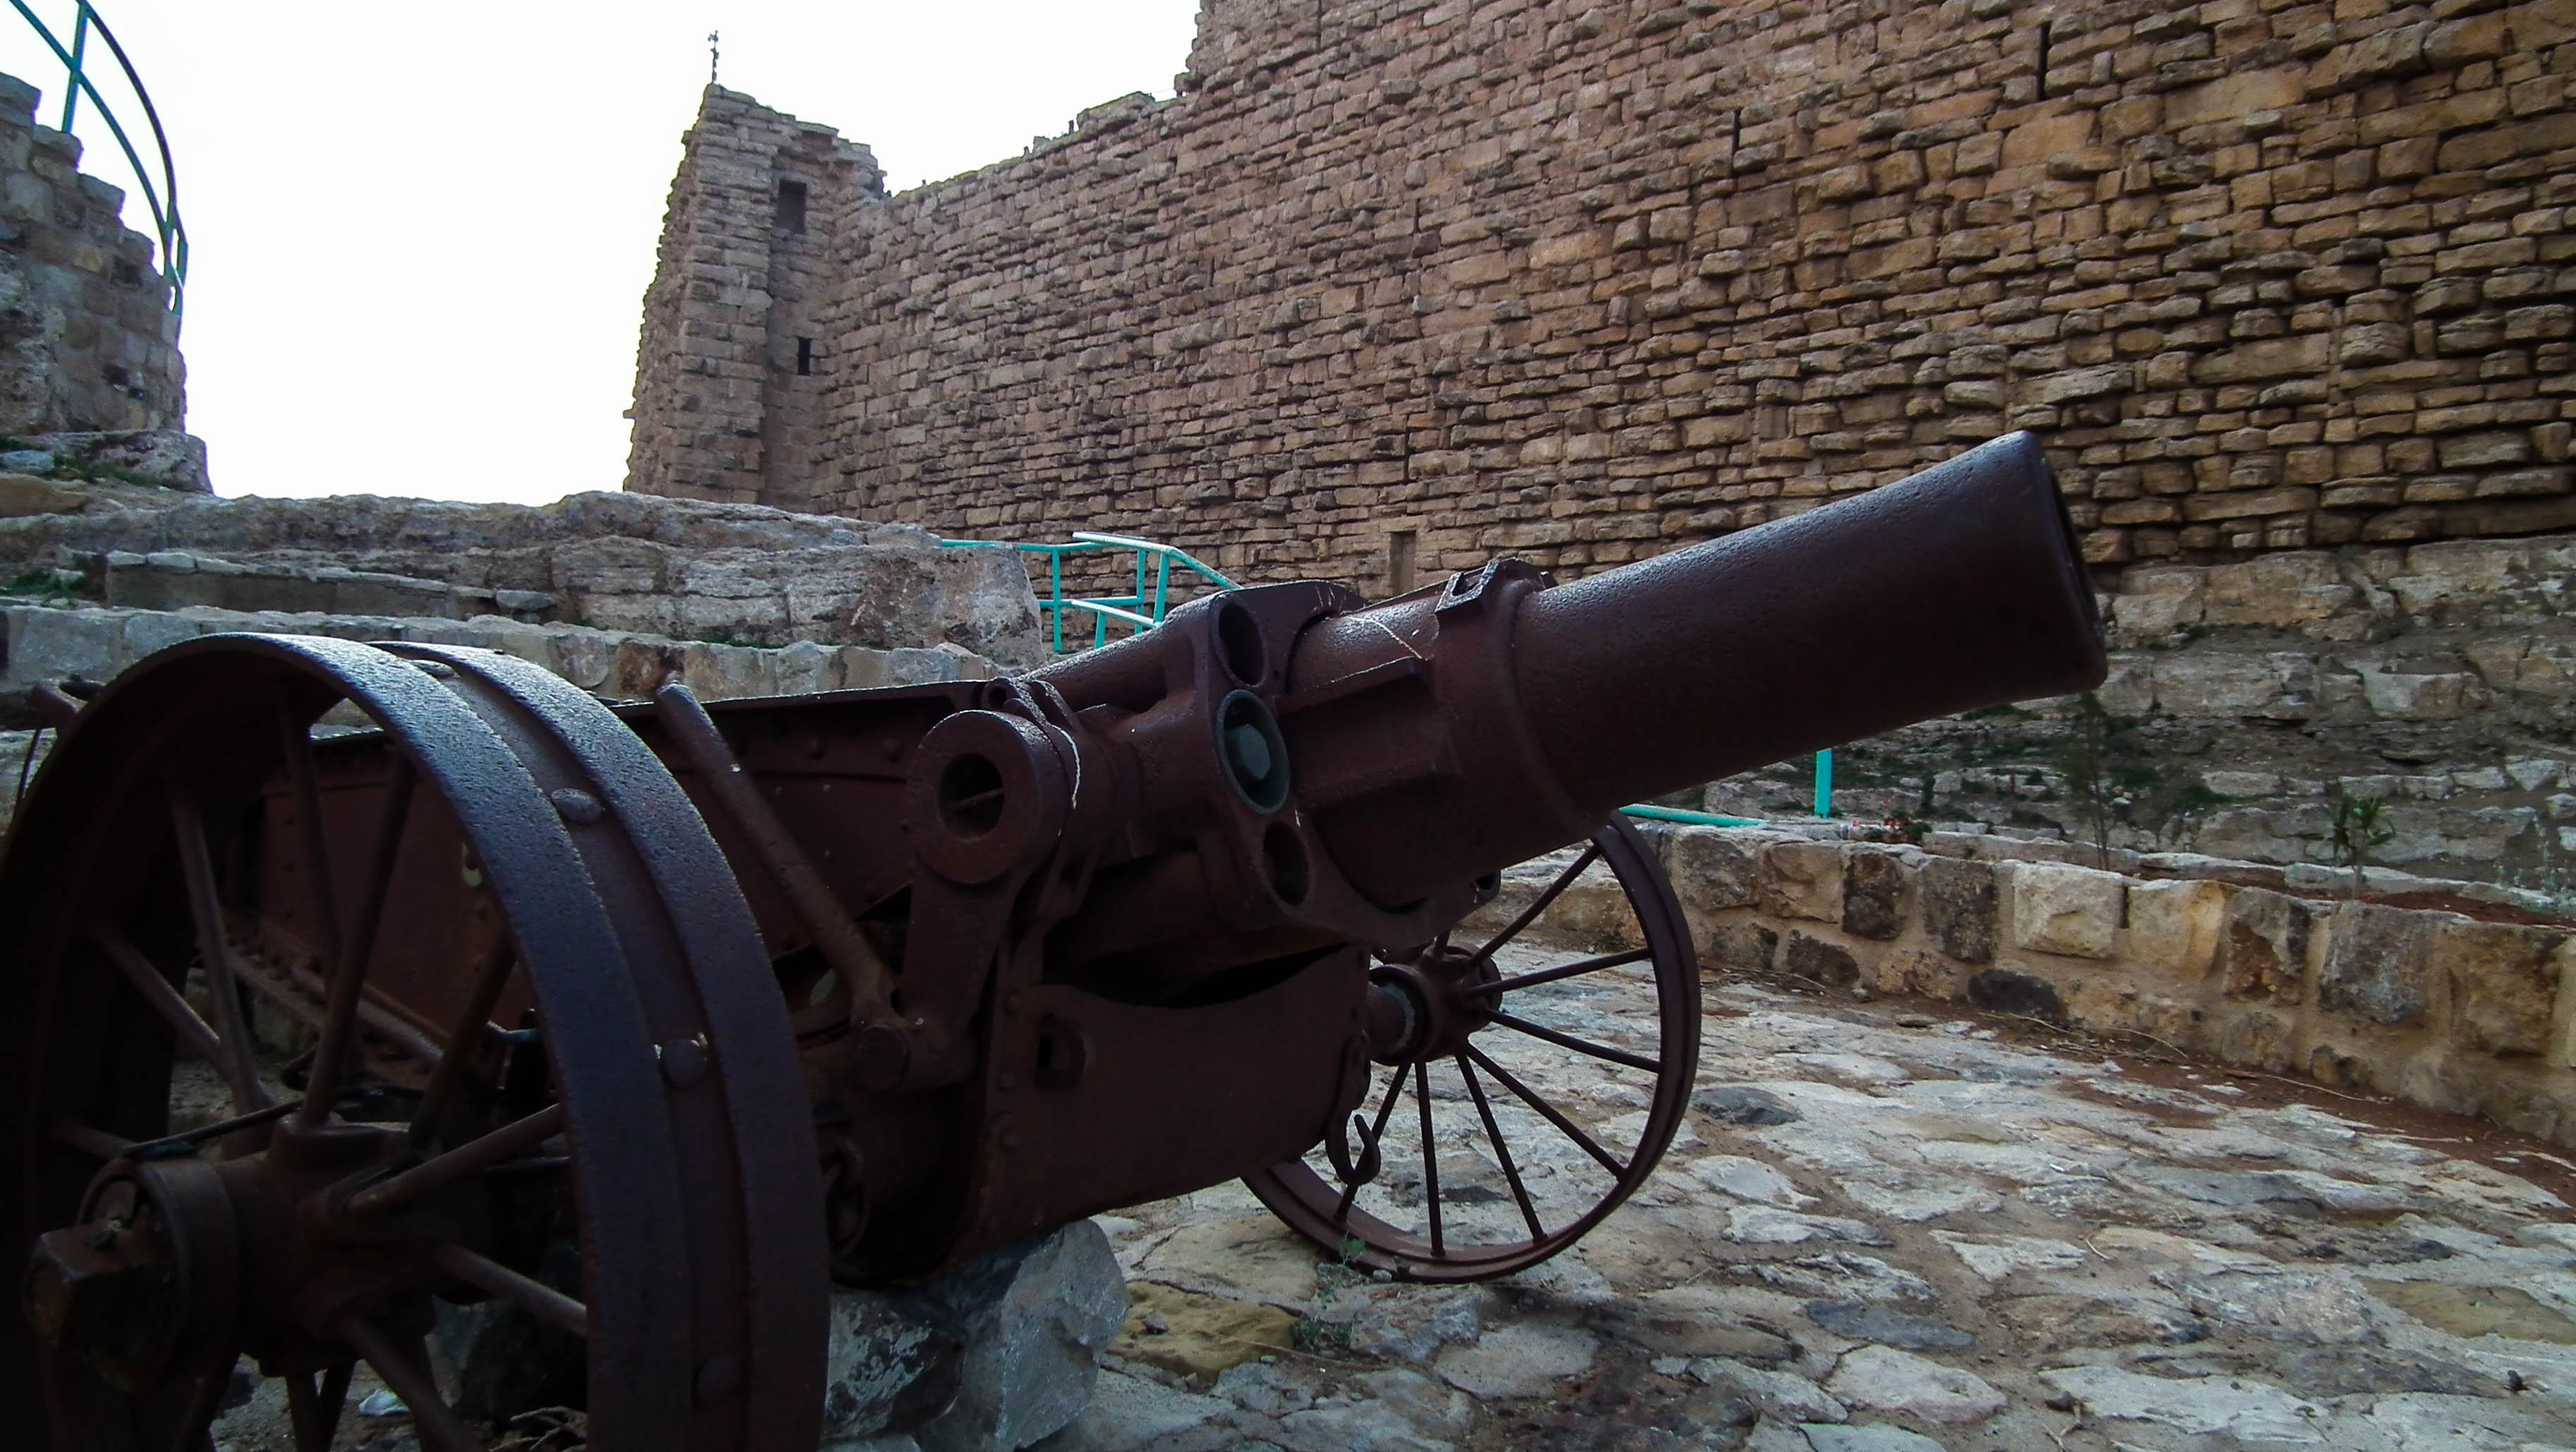 Jordania, Al-Karak, zamek Kerak